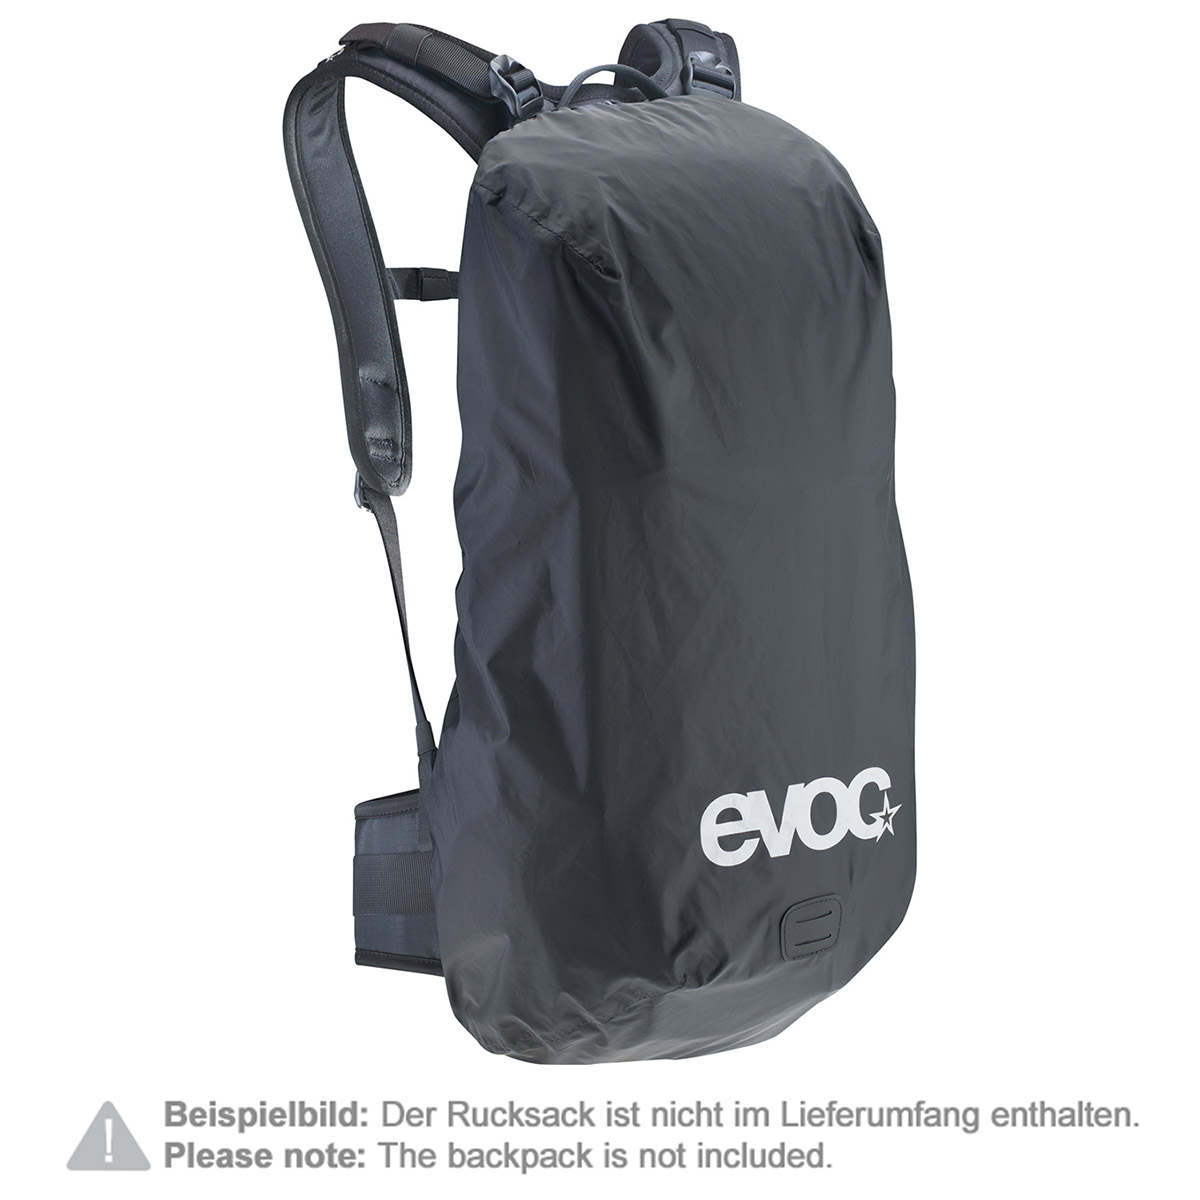 Evoc Backpack Raincover Raincover Sleeve Black, 10-25 Liter